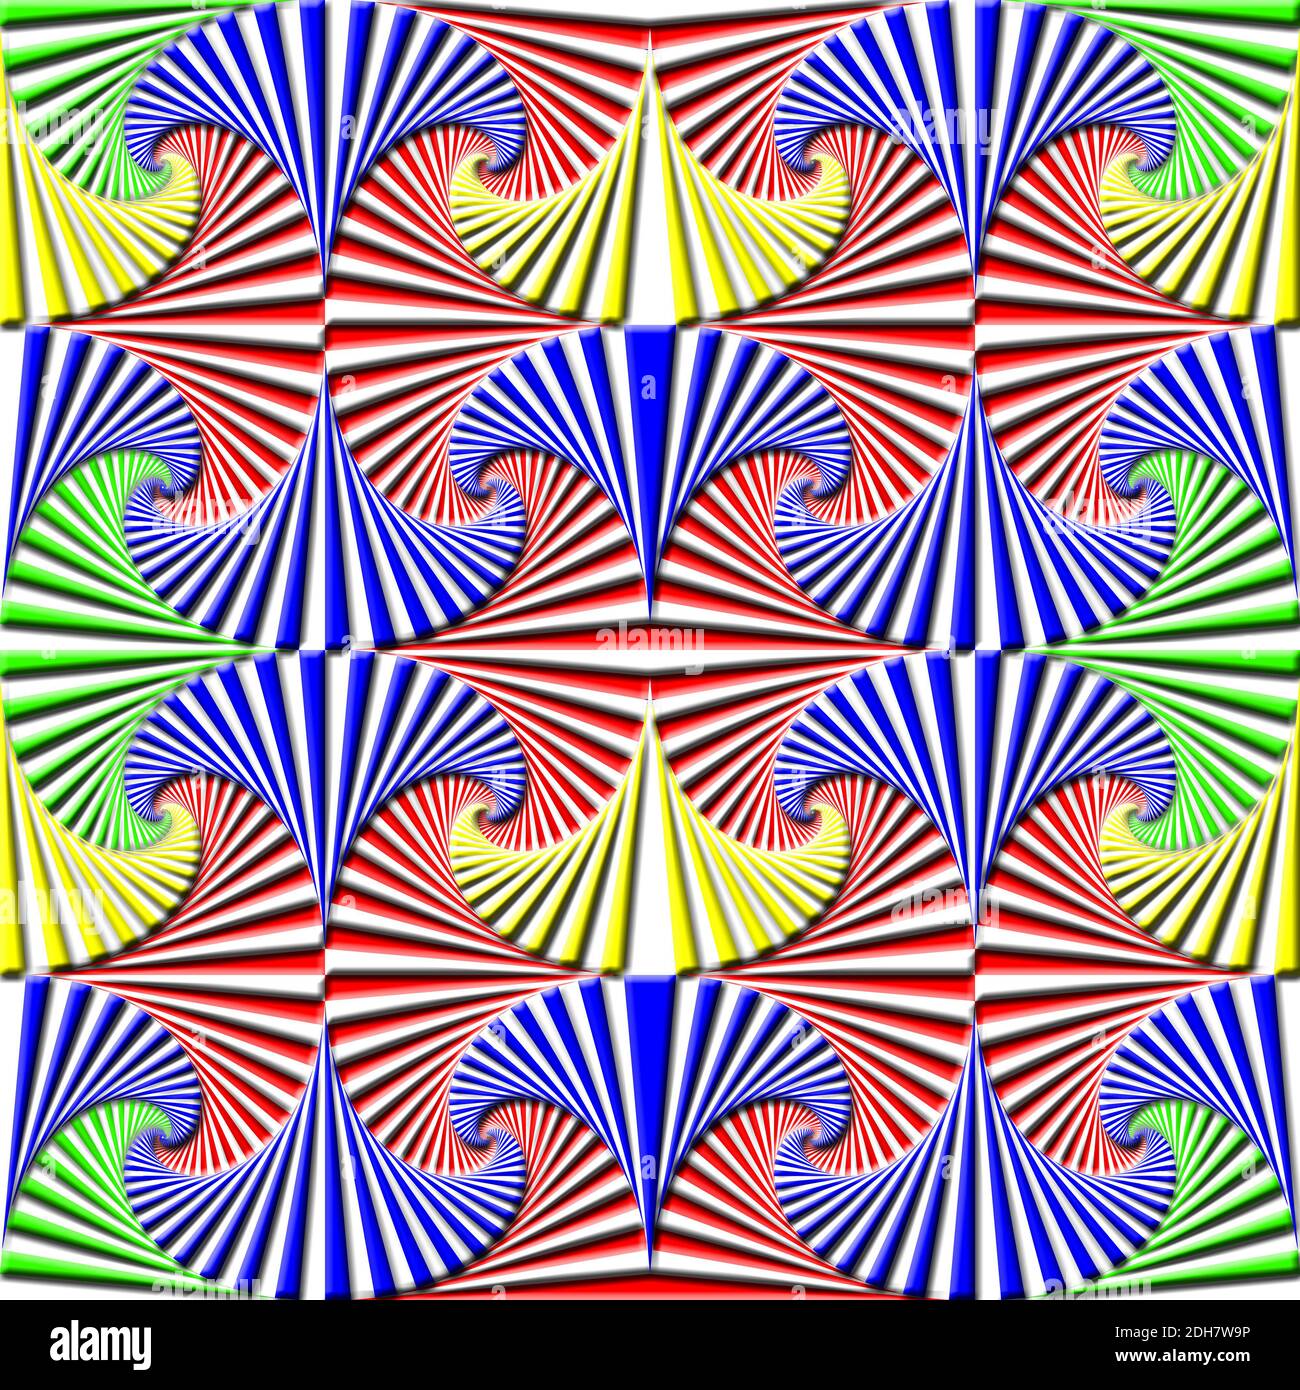 Répétition uniforme des carrés de couleur primaire en spirale Banque D'Images